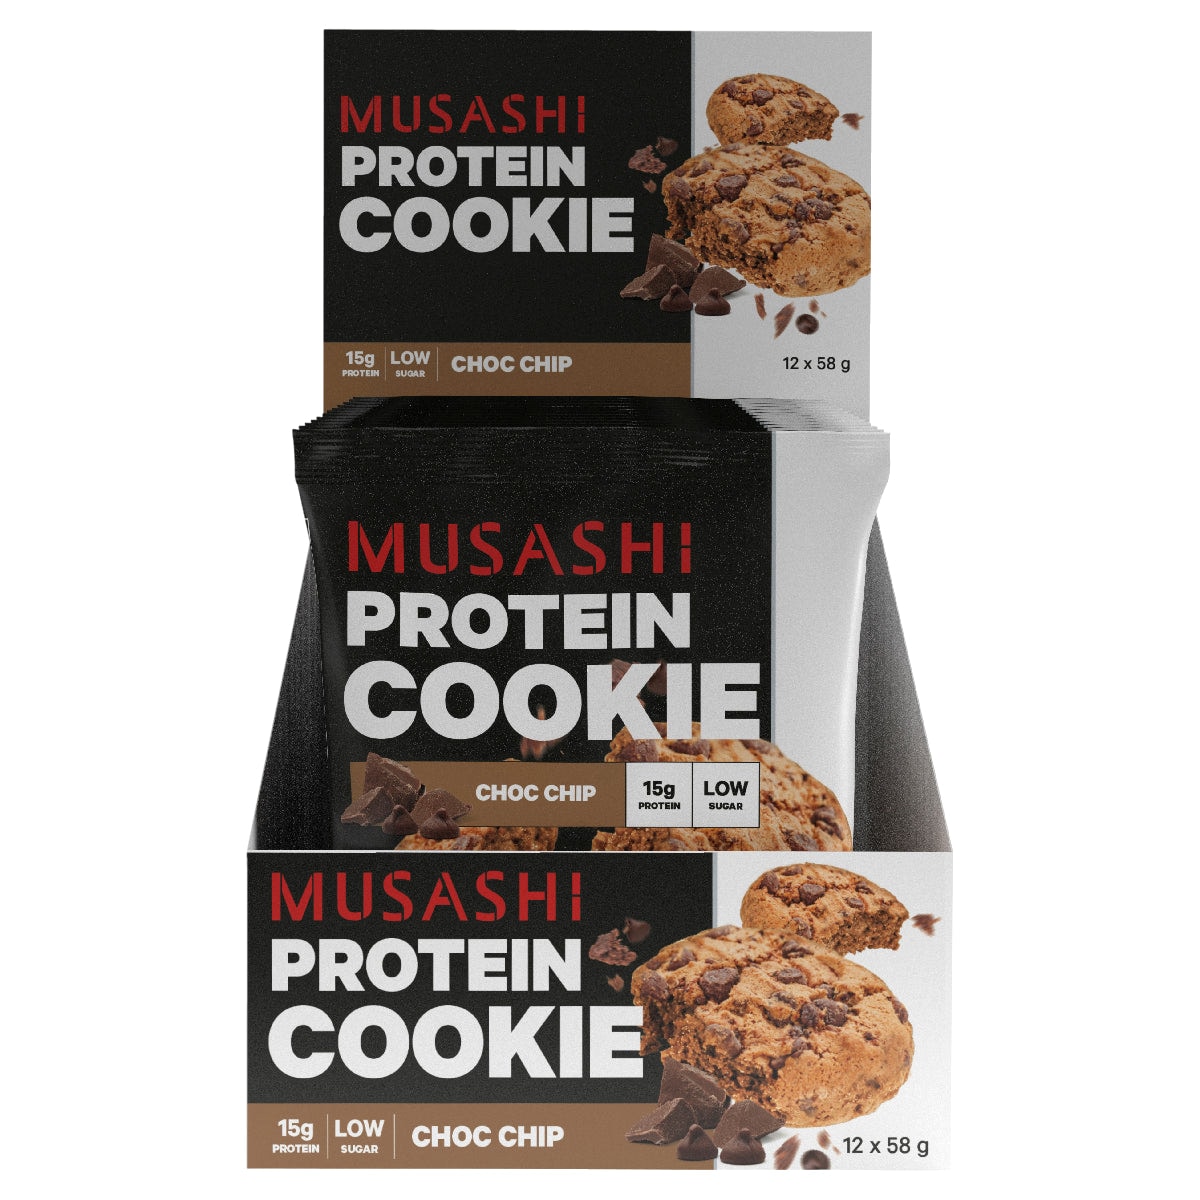 Musashi Choc Chip Protein Cookie 12 x 58g